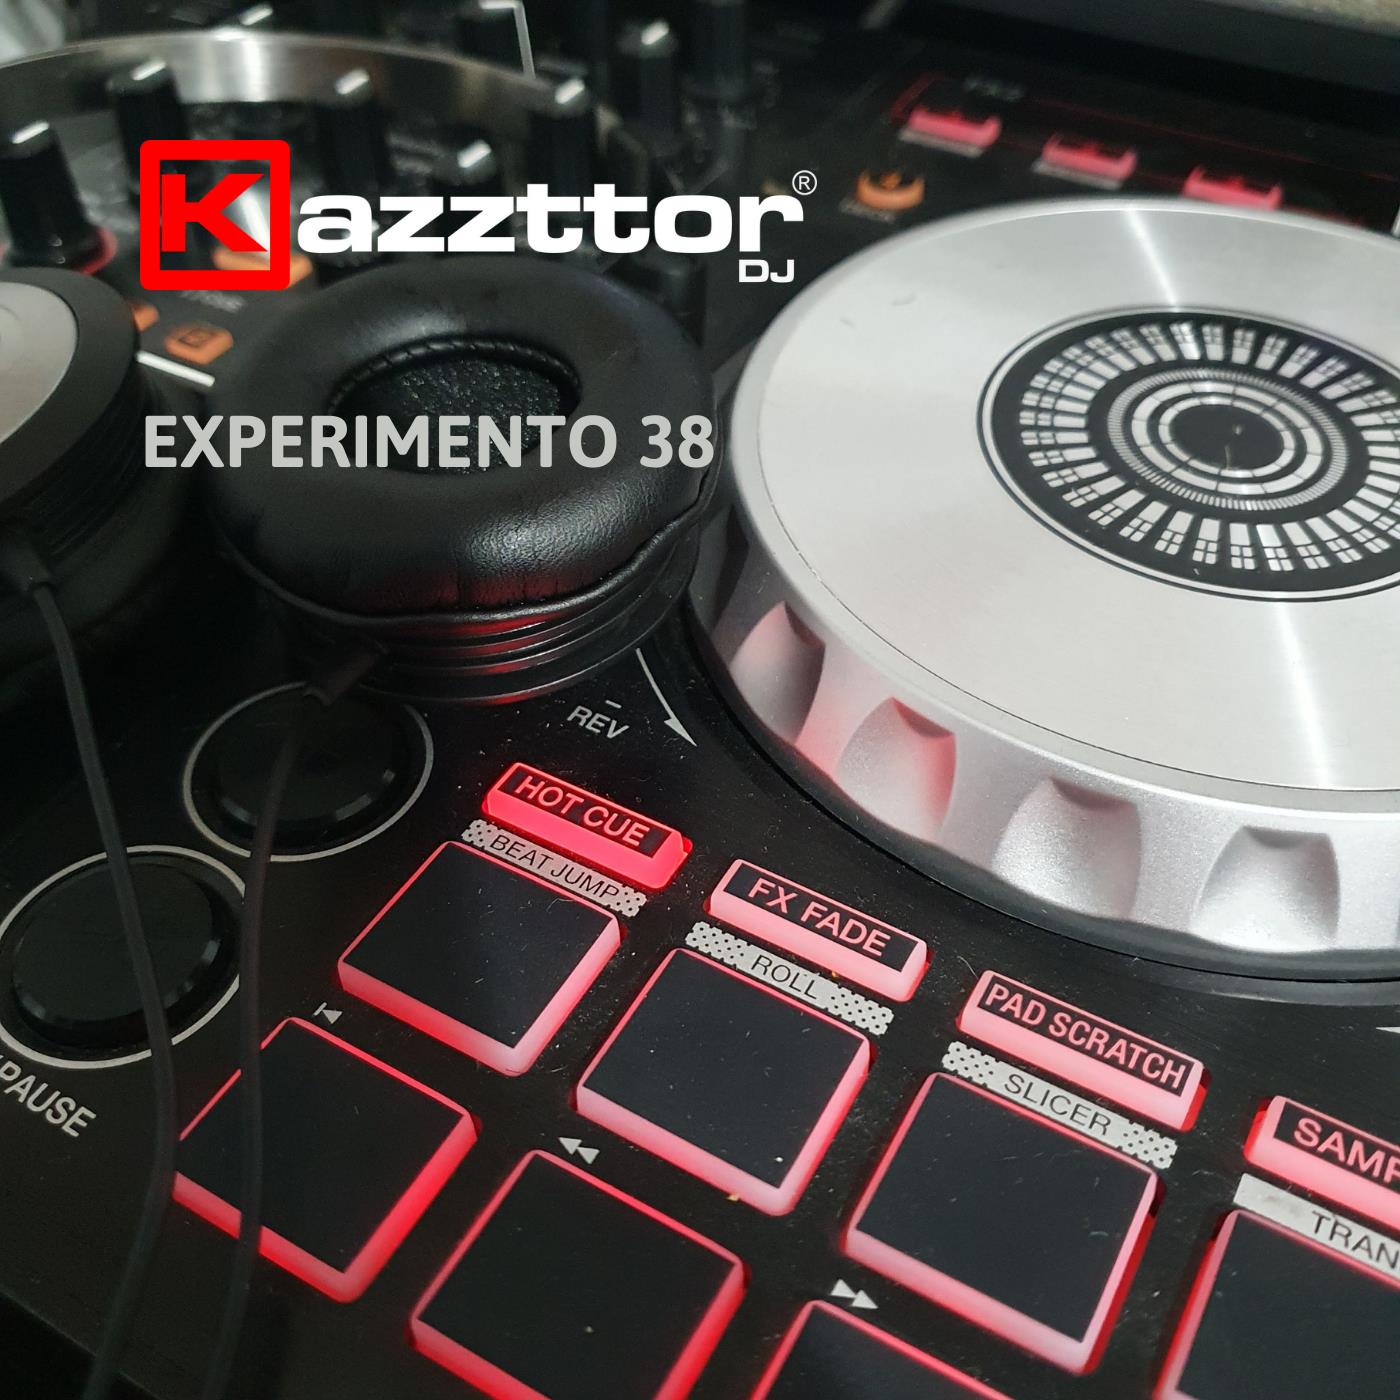 Capa do set de mixagens: detalhe da controladora com a logo do DJ Kazzttor e o título do trabalho, Experimento 38.